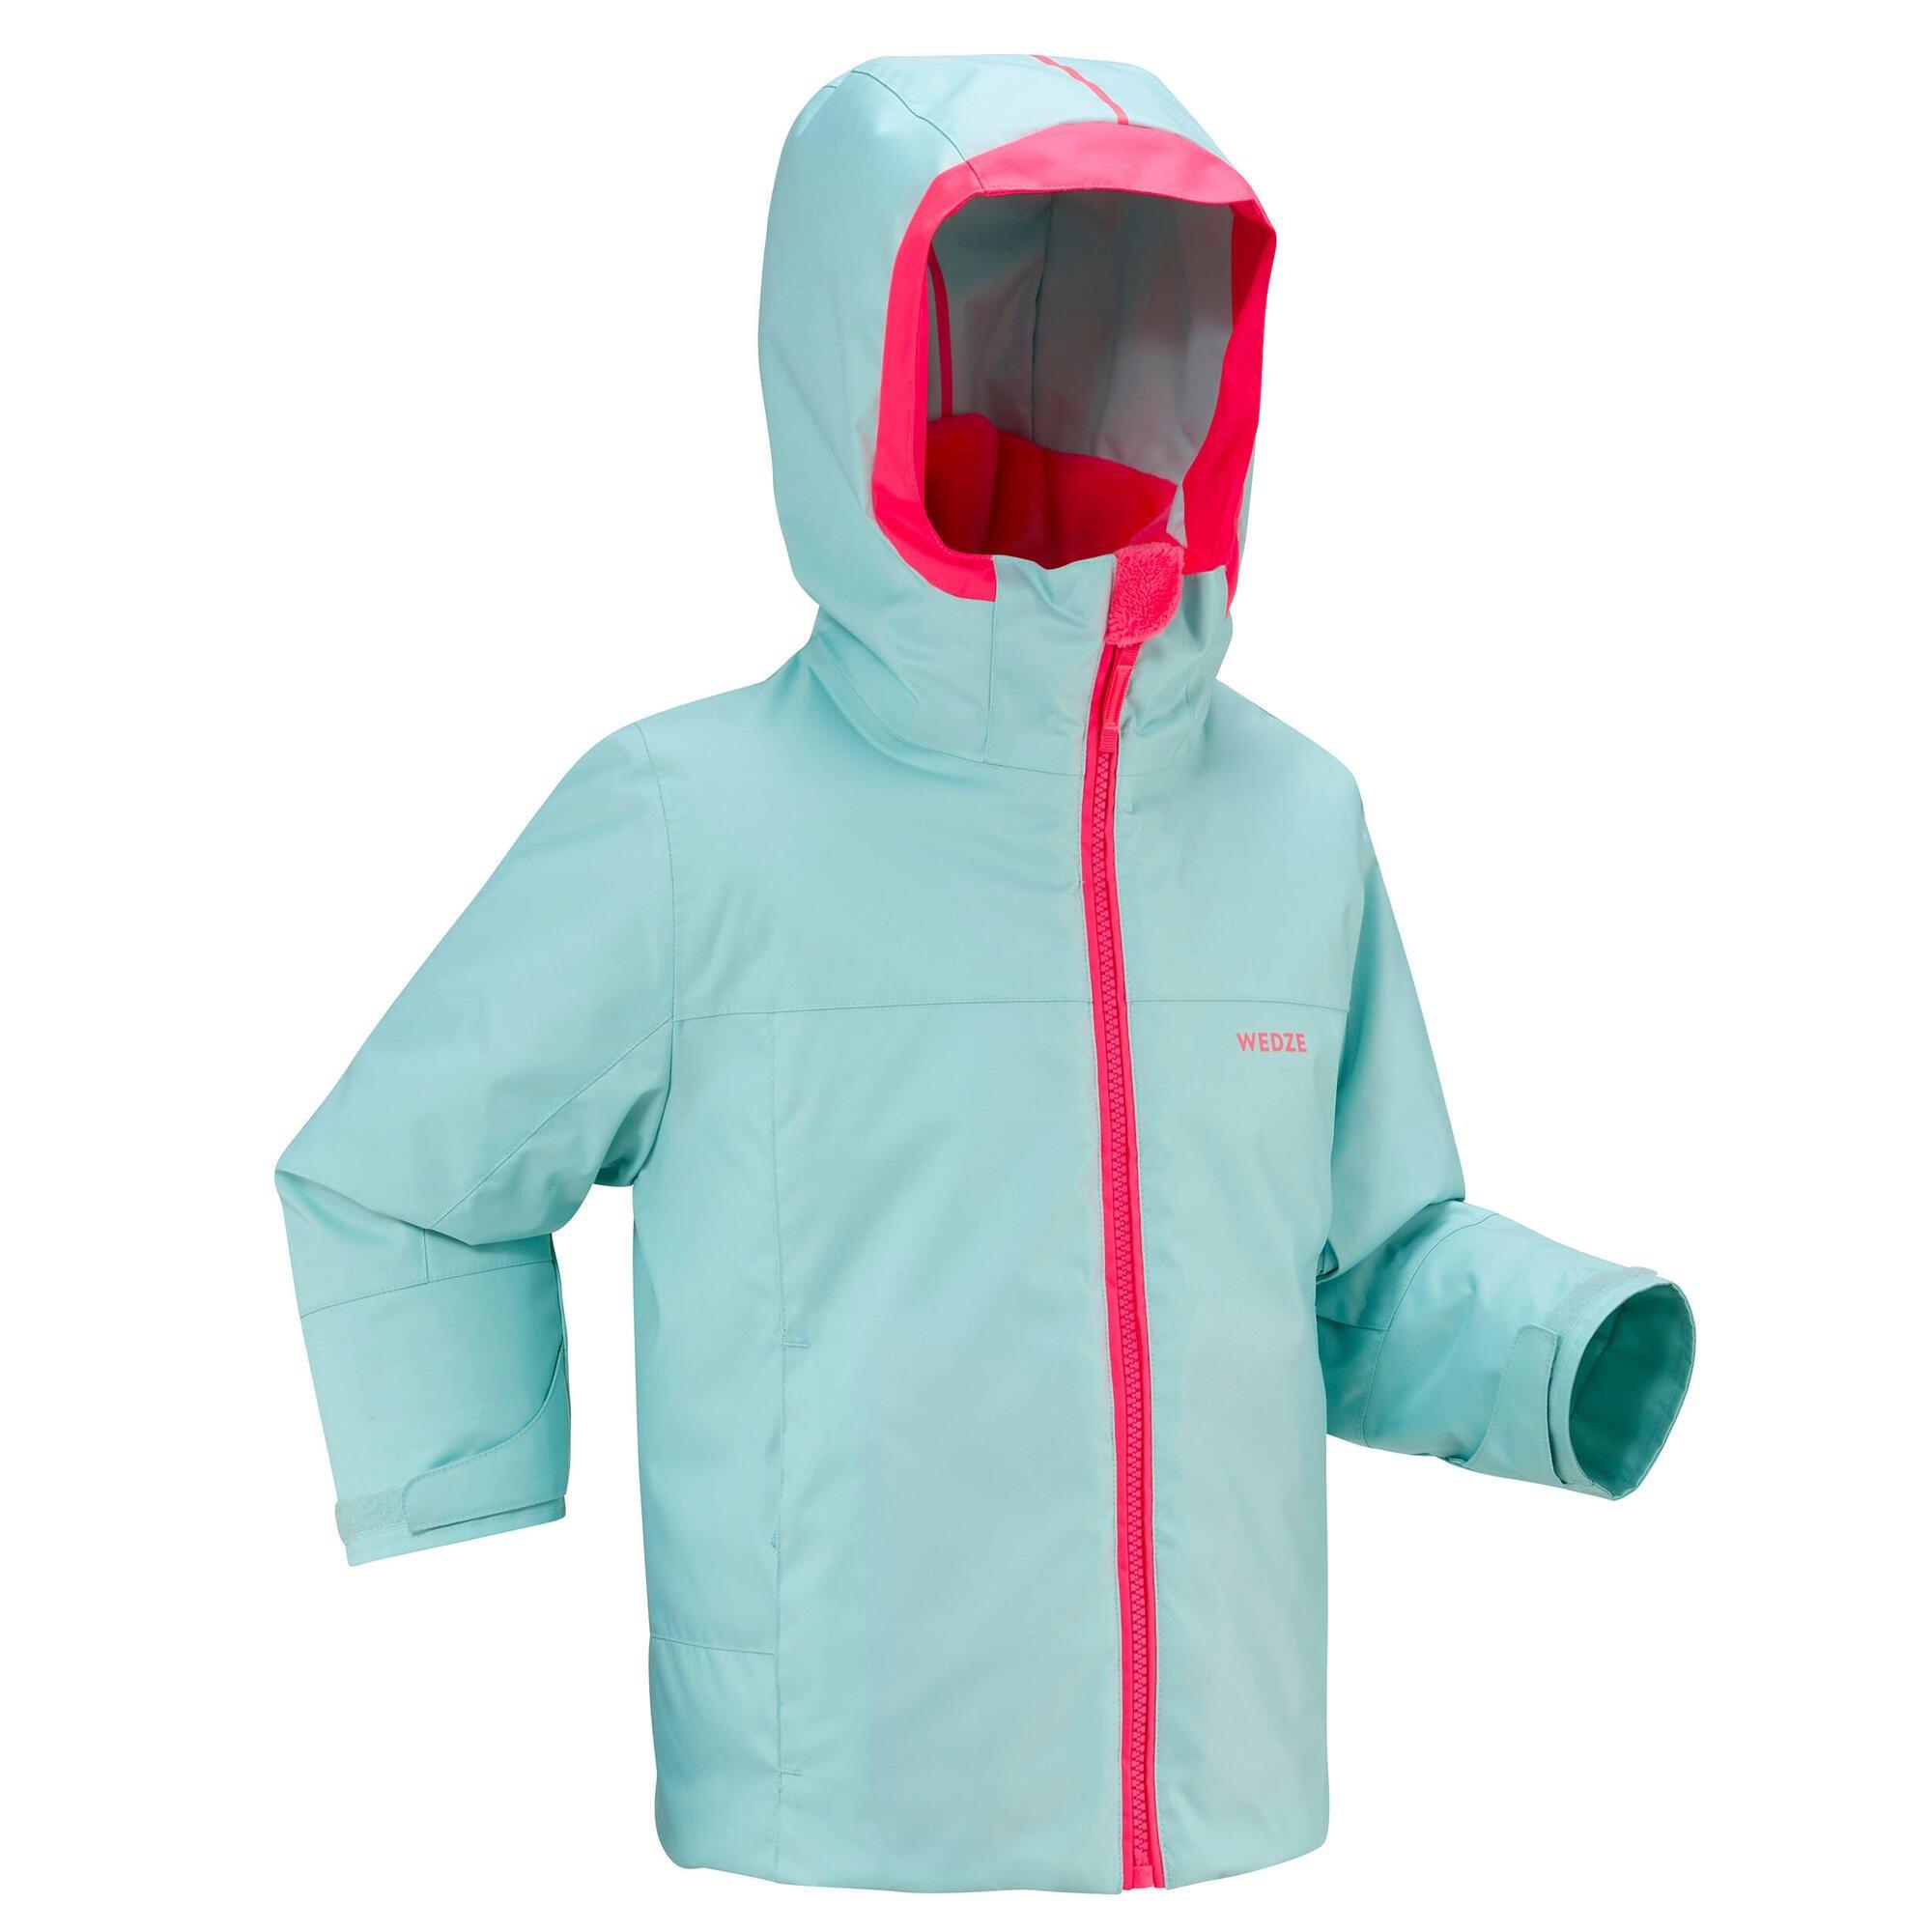 Decathlon Warm And Waterproof Ski Jacket 500 Pull’N Fit